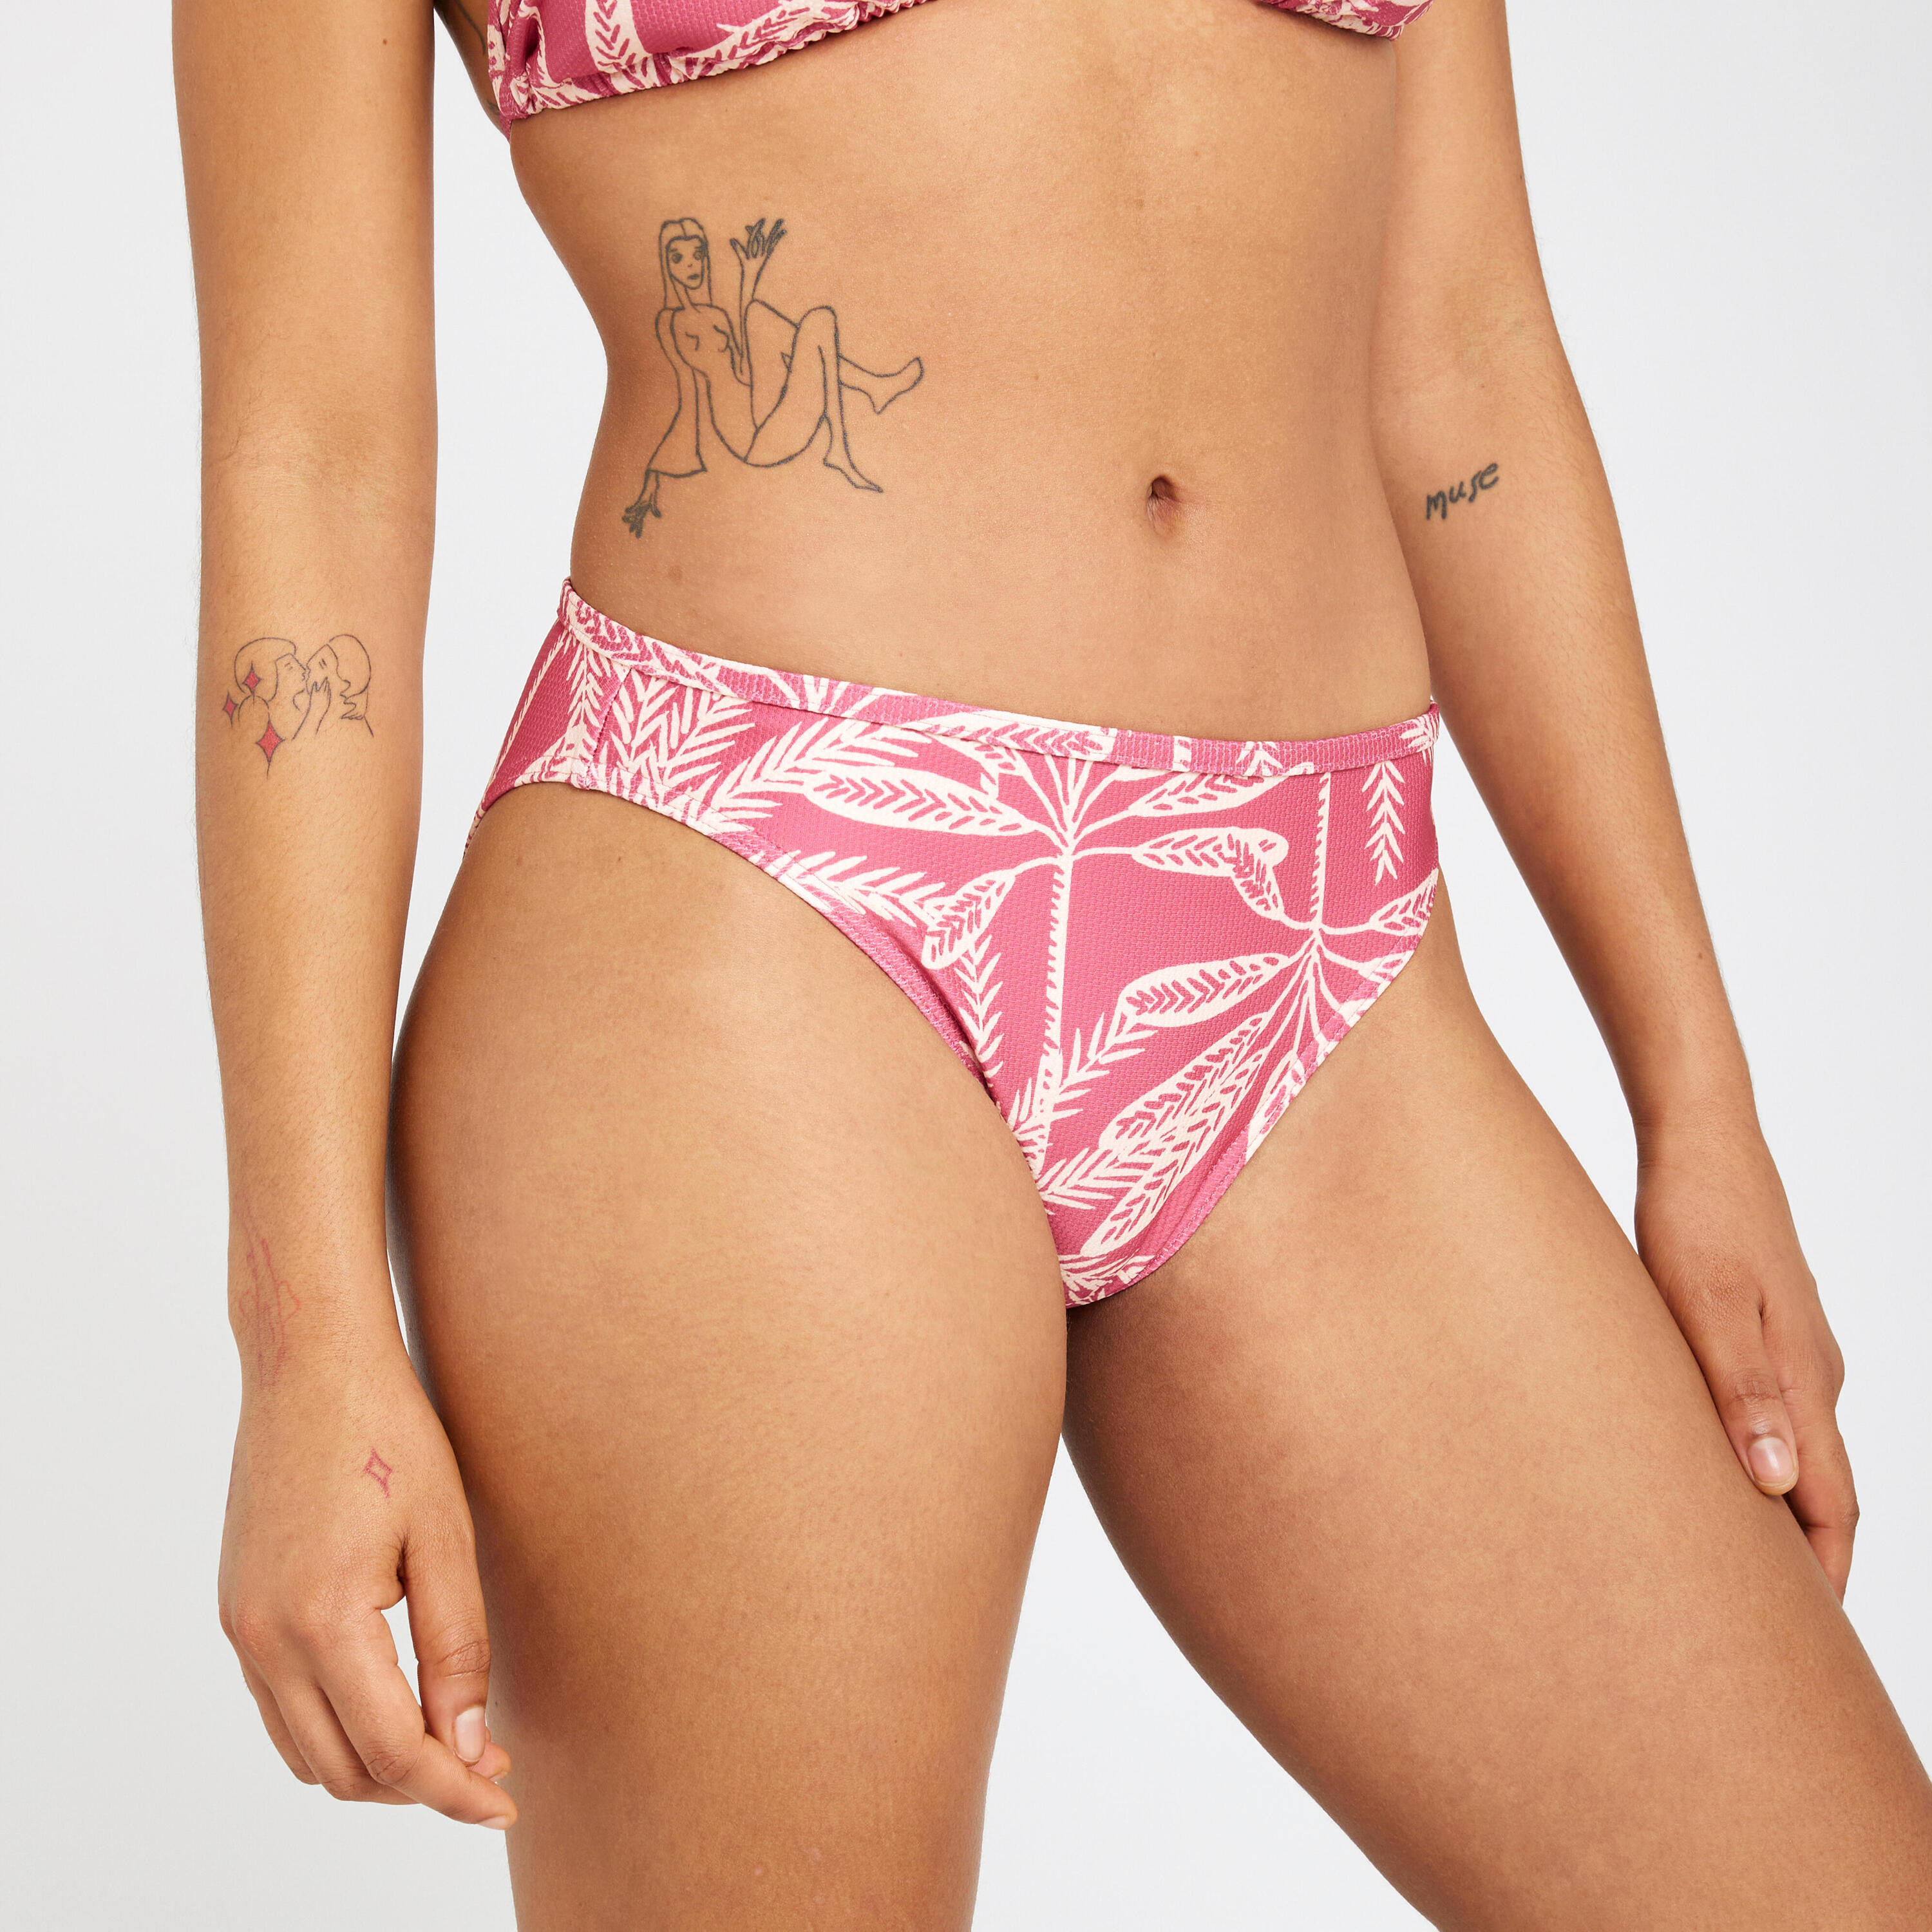 OLAIAN Women's swimsuit bottoms textured briefs - Nina palmer pink